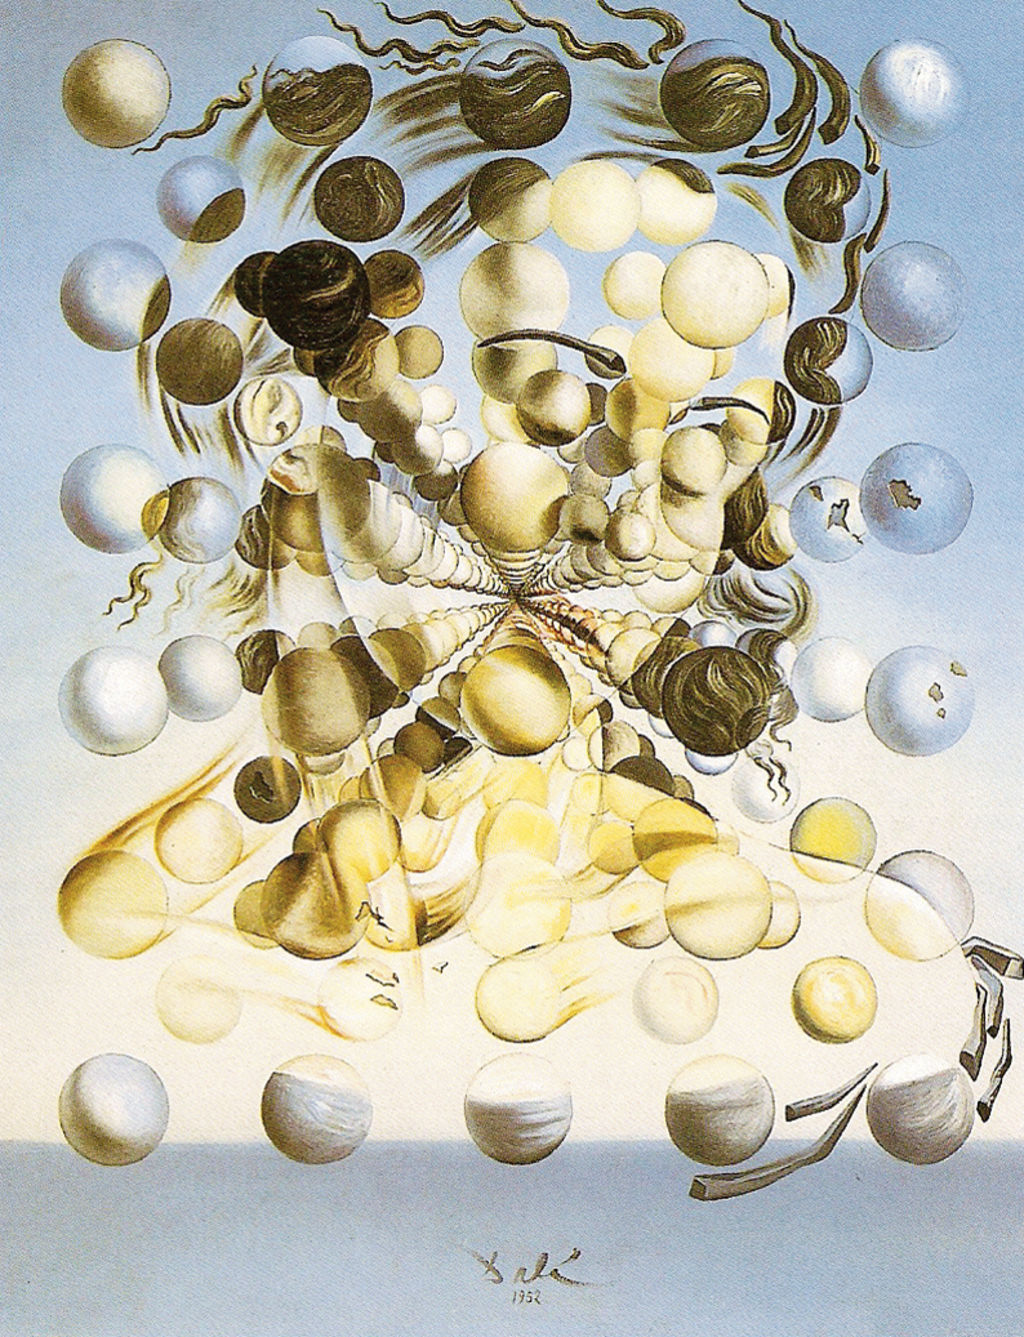 Galatea de las esferas, Salvador Dalí, 1955.Foto: Colección Gala-Salvador Dalí.